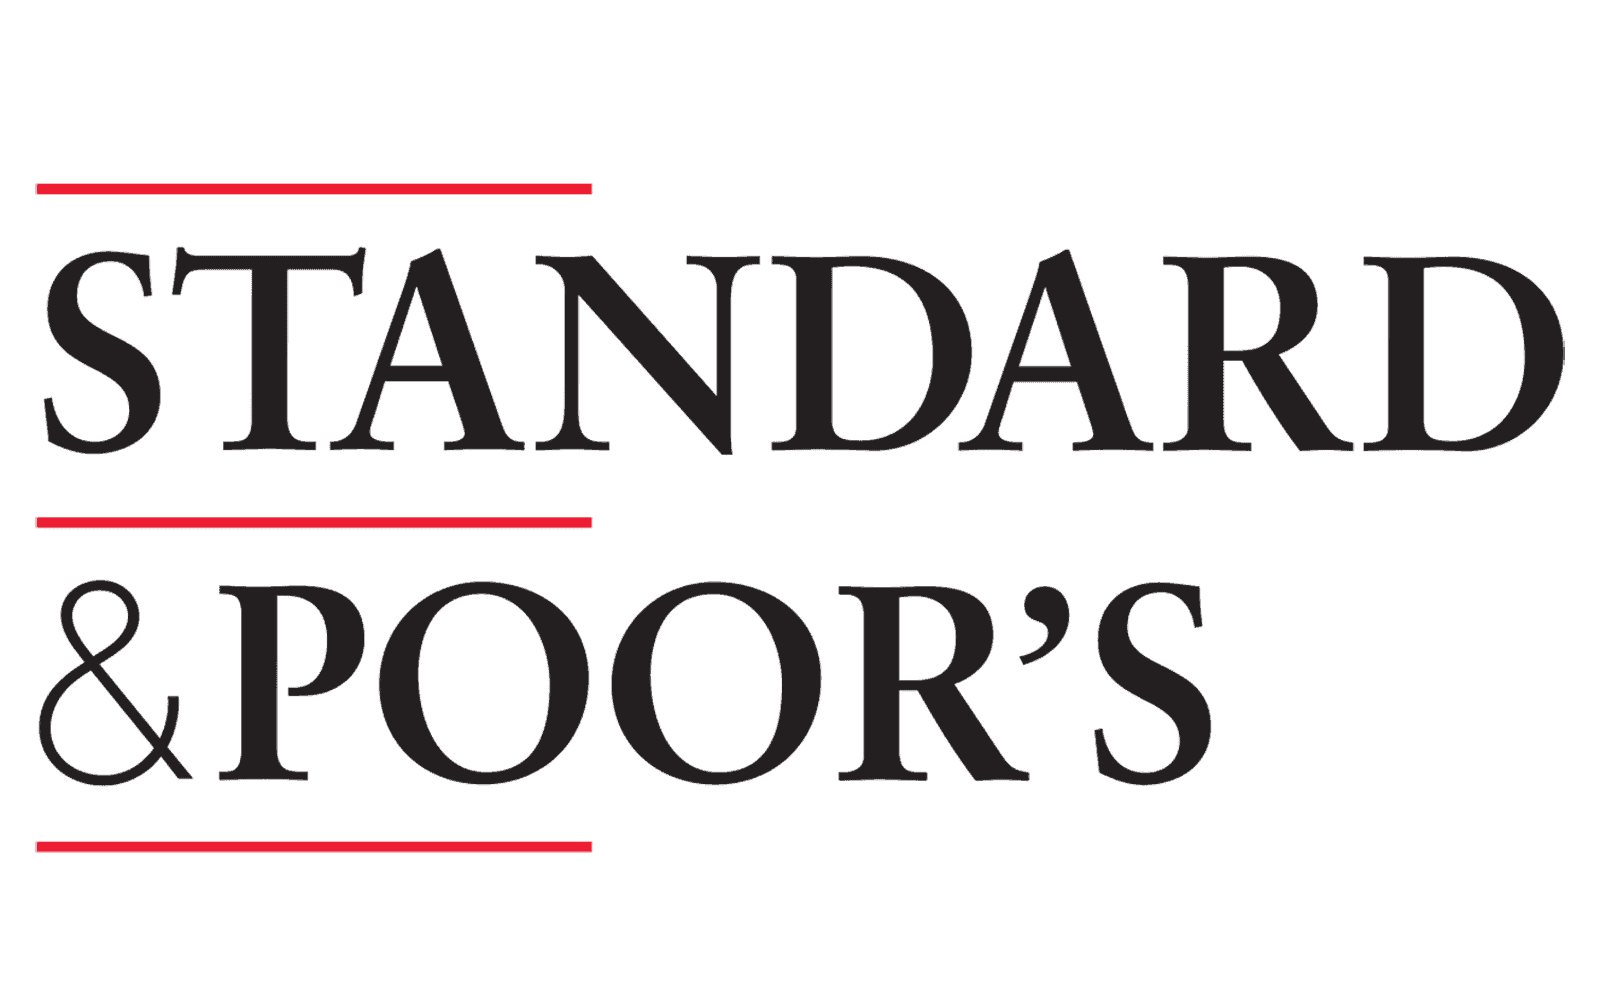 S p rating. Standard and poors logo. Standard & poor’s. Standard poor s логотип. Рейтинговое агентство Standard poor's.